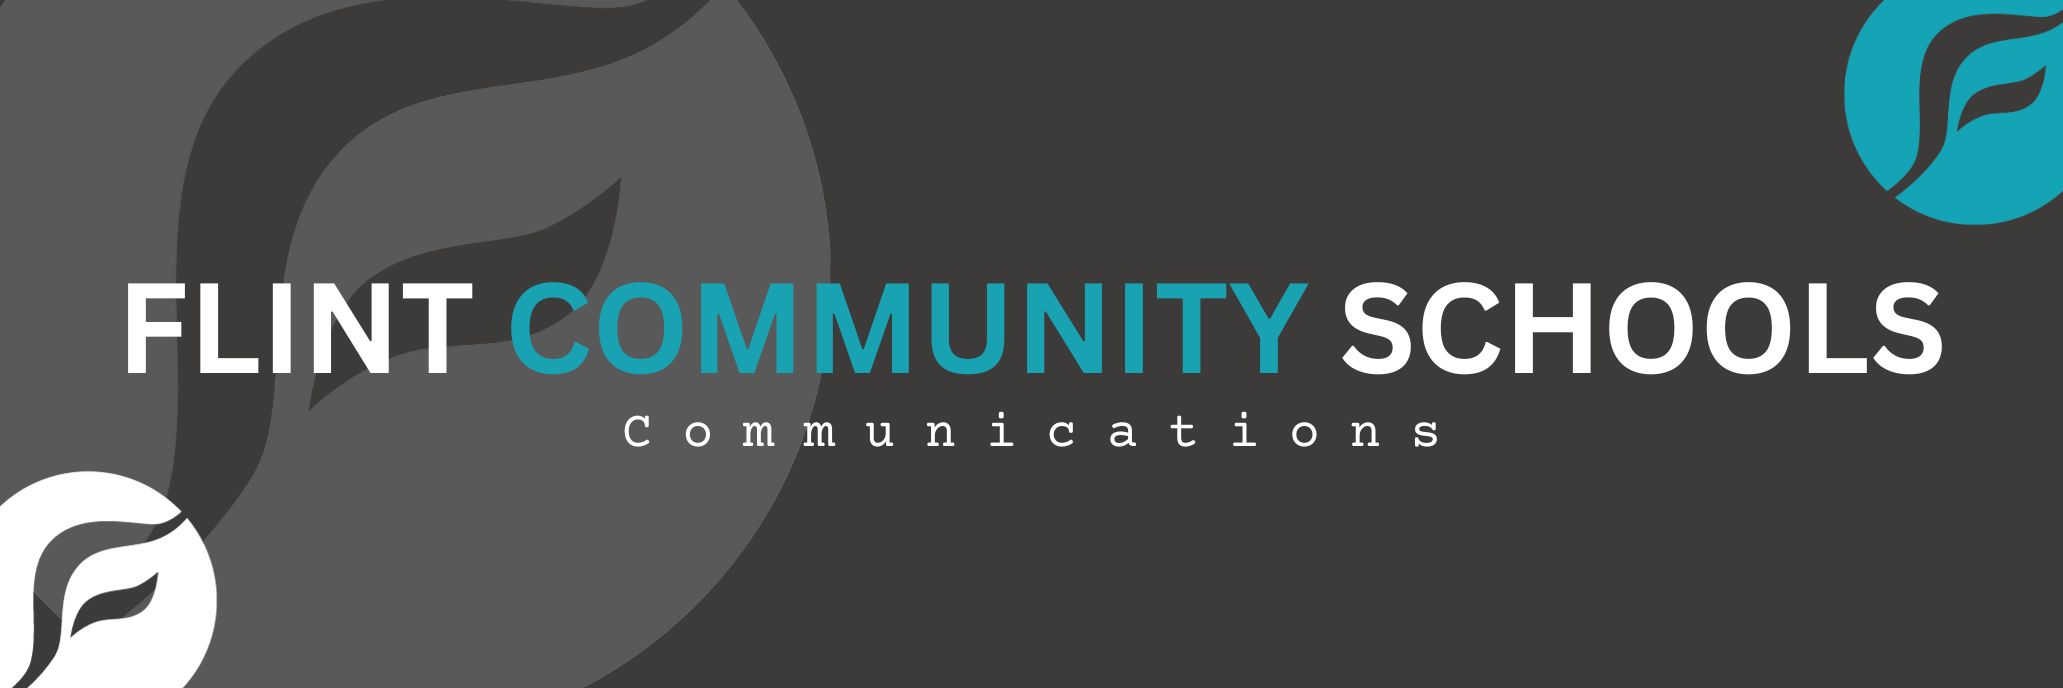 Flint Community Schools Communications